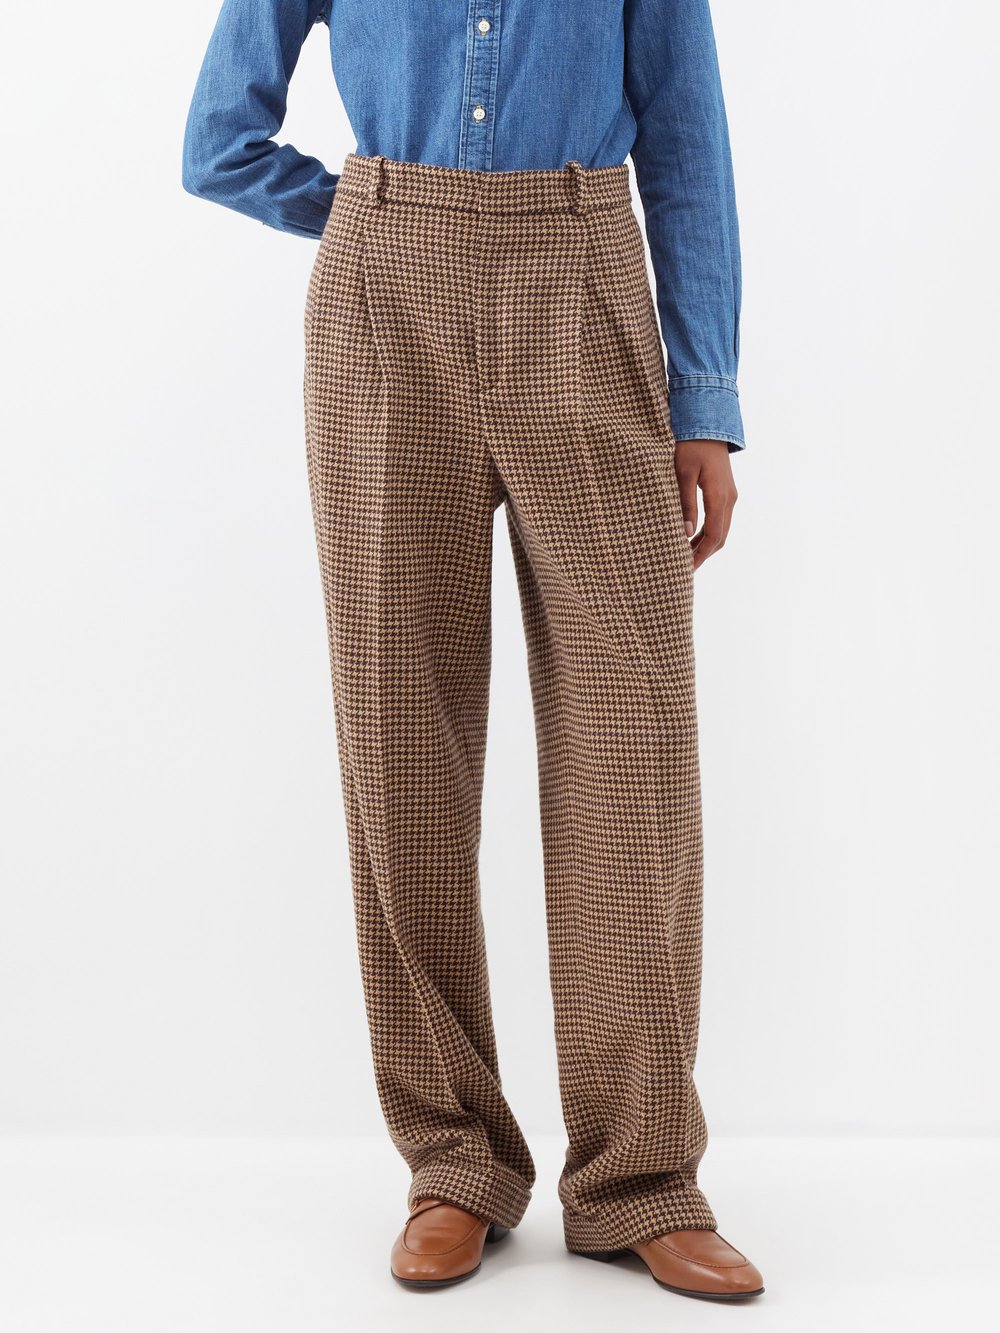 Твидовые брюки с узором «гусиные лапки» и складками спереди Polo Ralph Lauren, коричневый